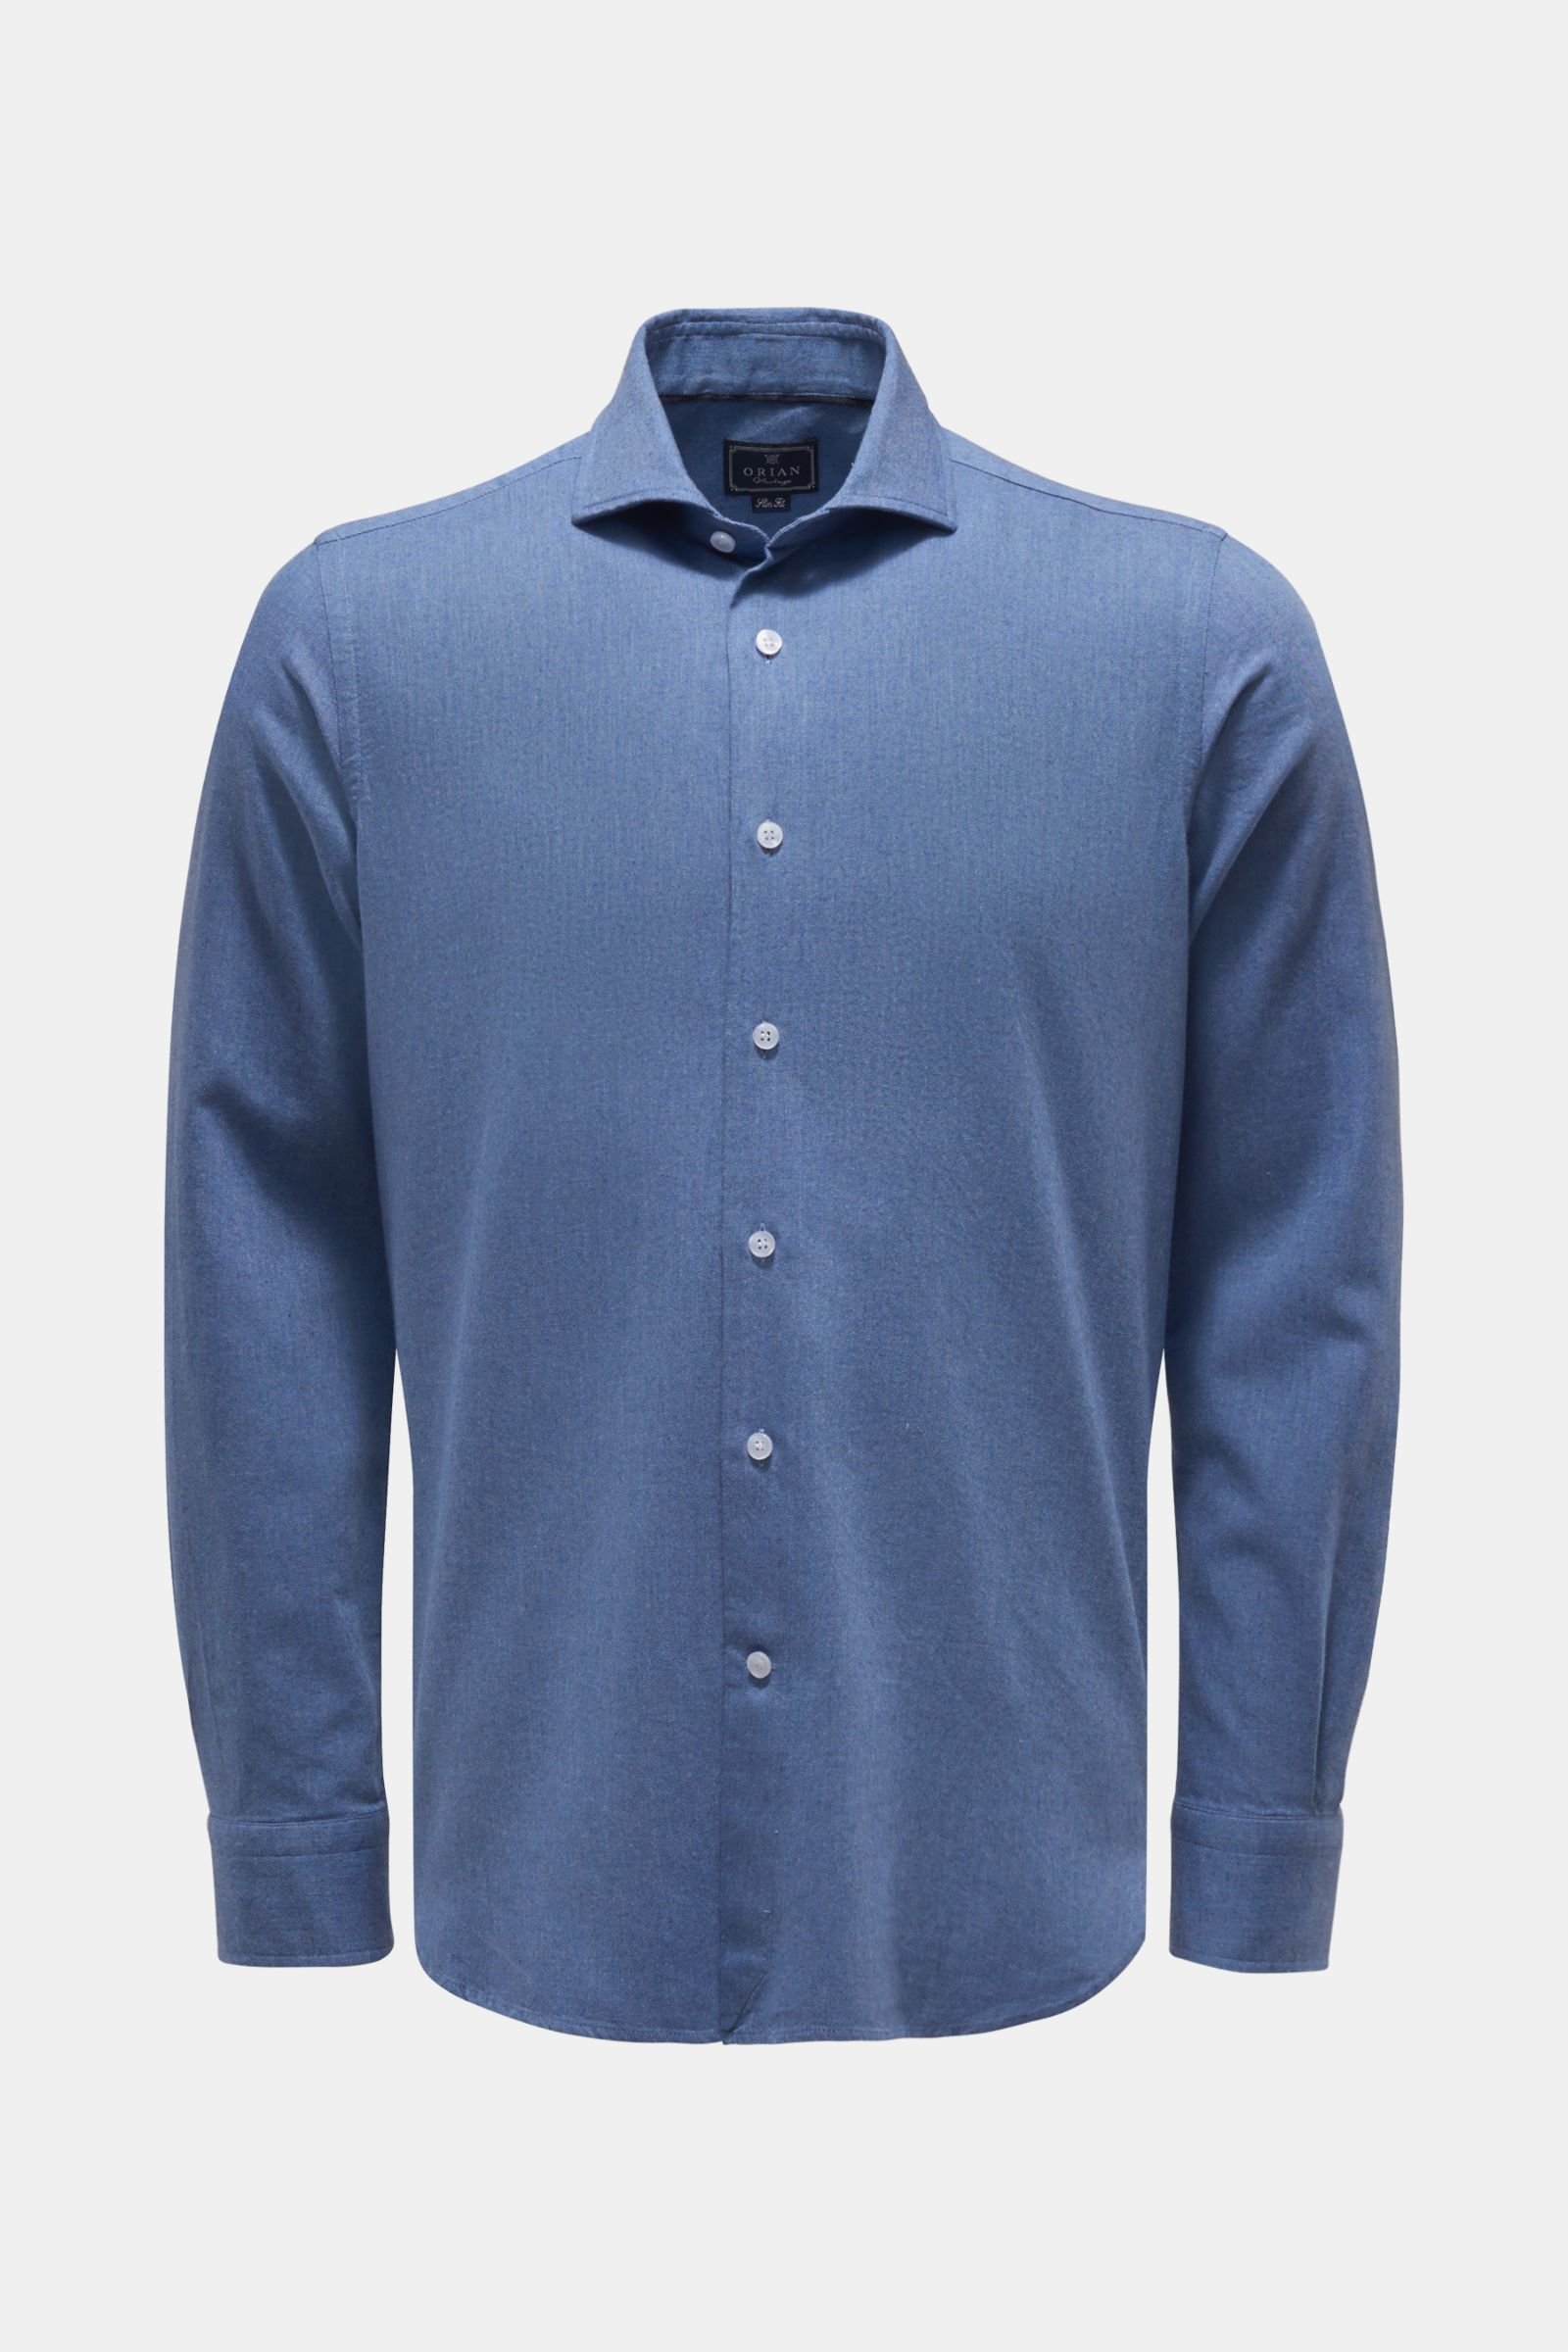 Flannel shirt shark collar smoky blue